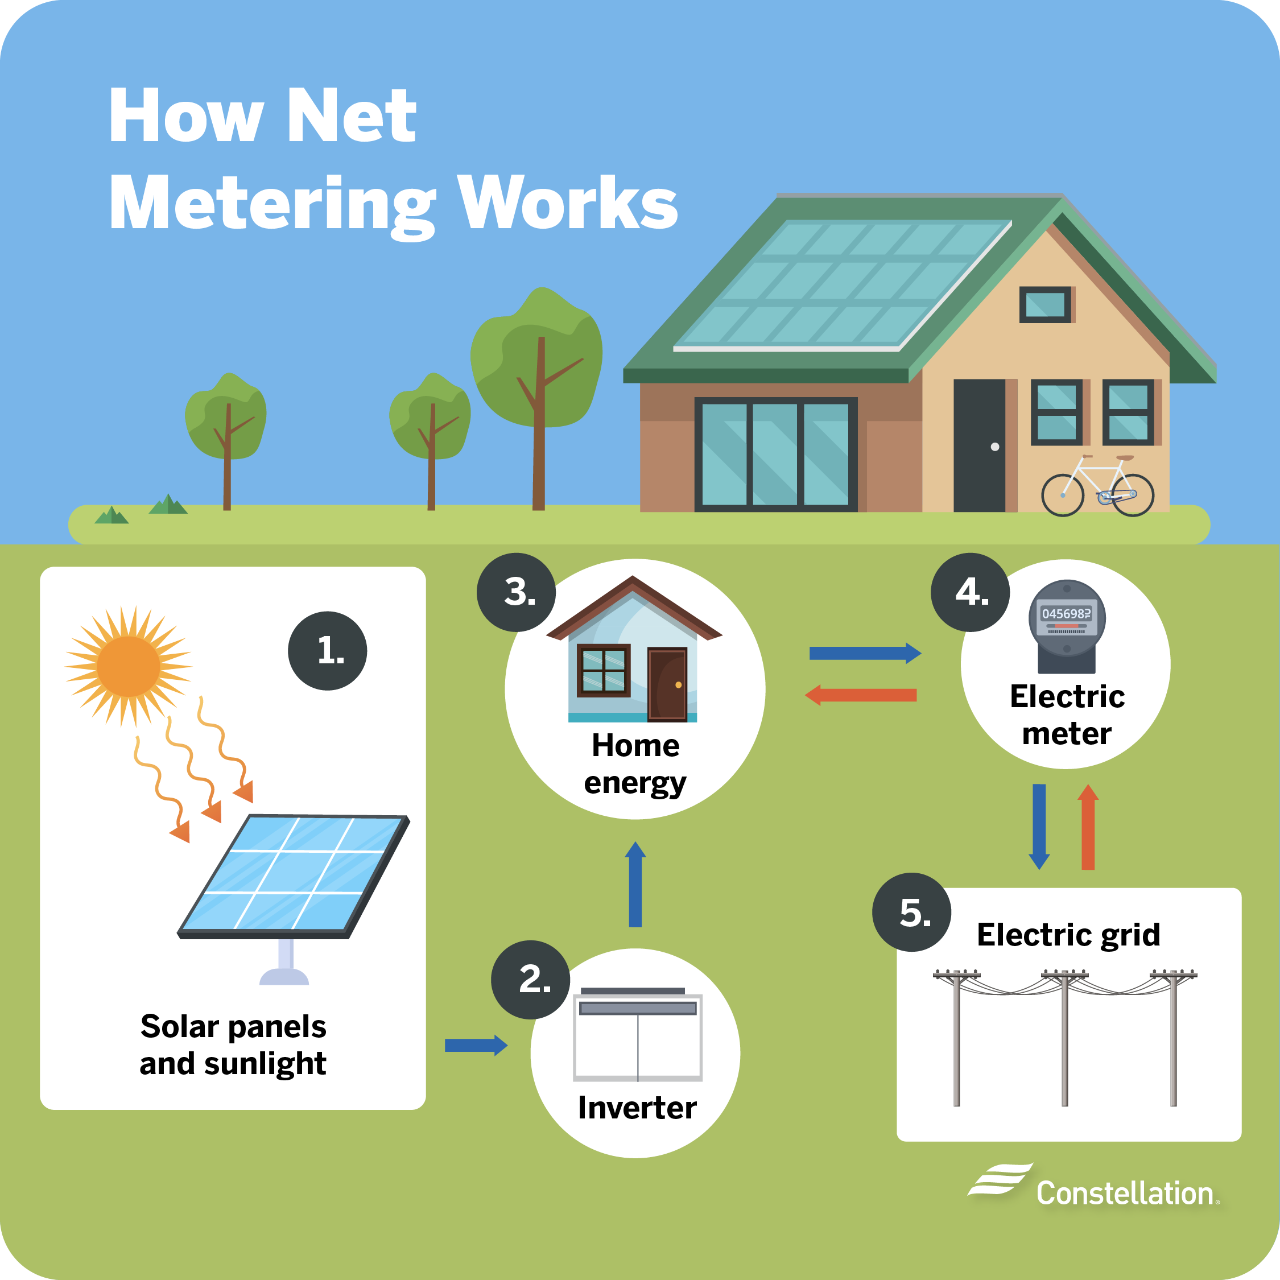 How does net metering work?